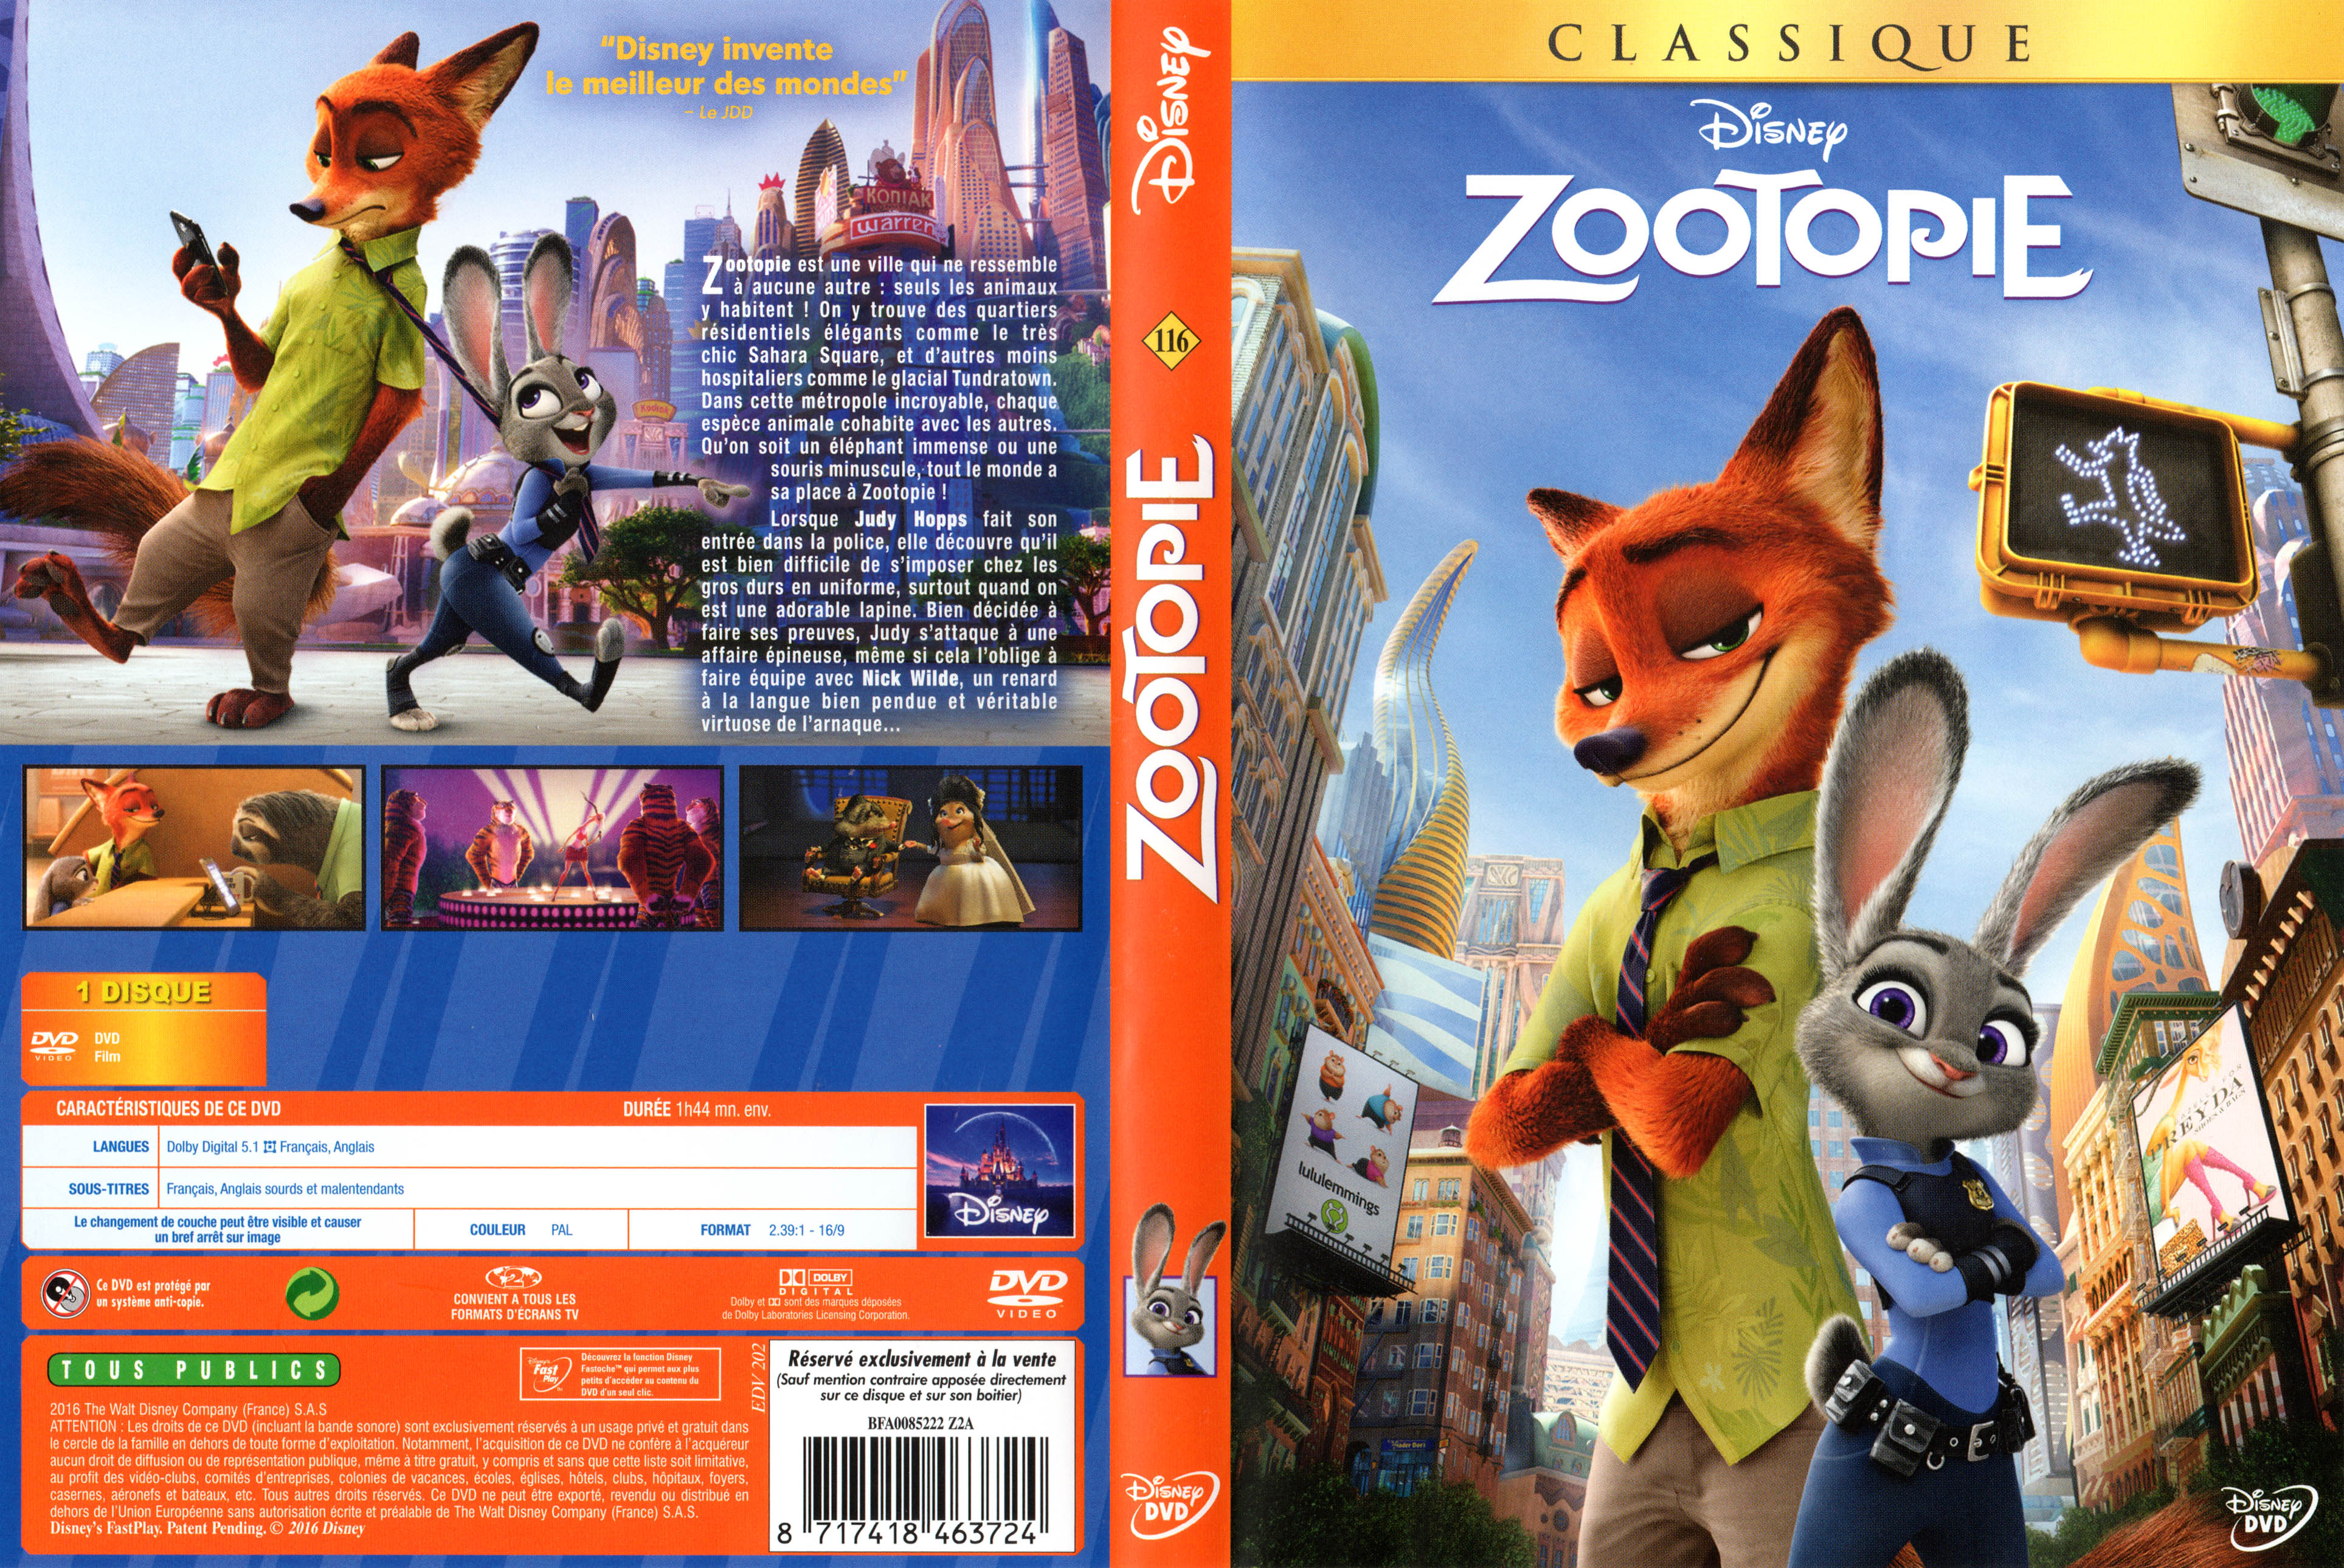 Jaquette DVD Zootopie v2